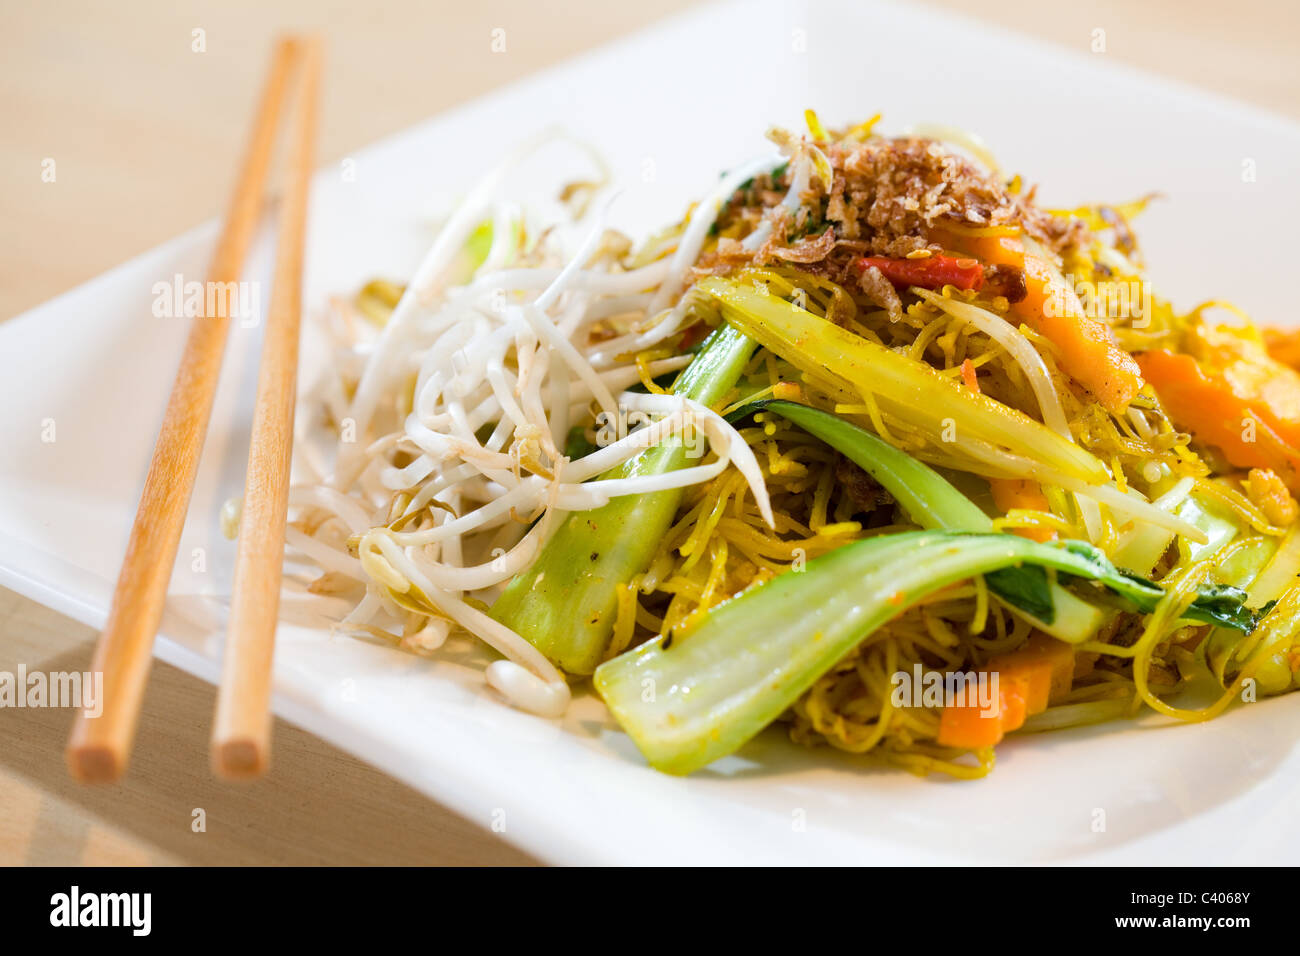 Thai Singapore style stir fried noodles Stock Photo